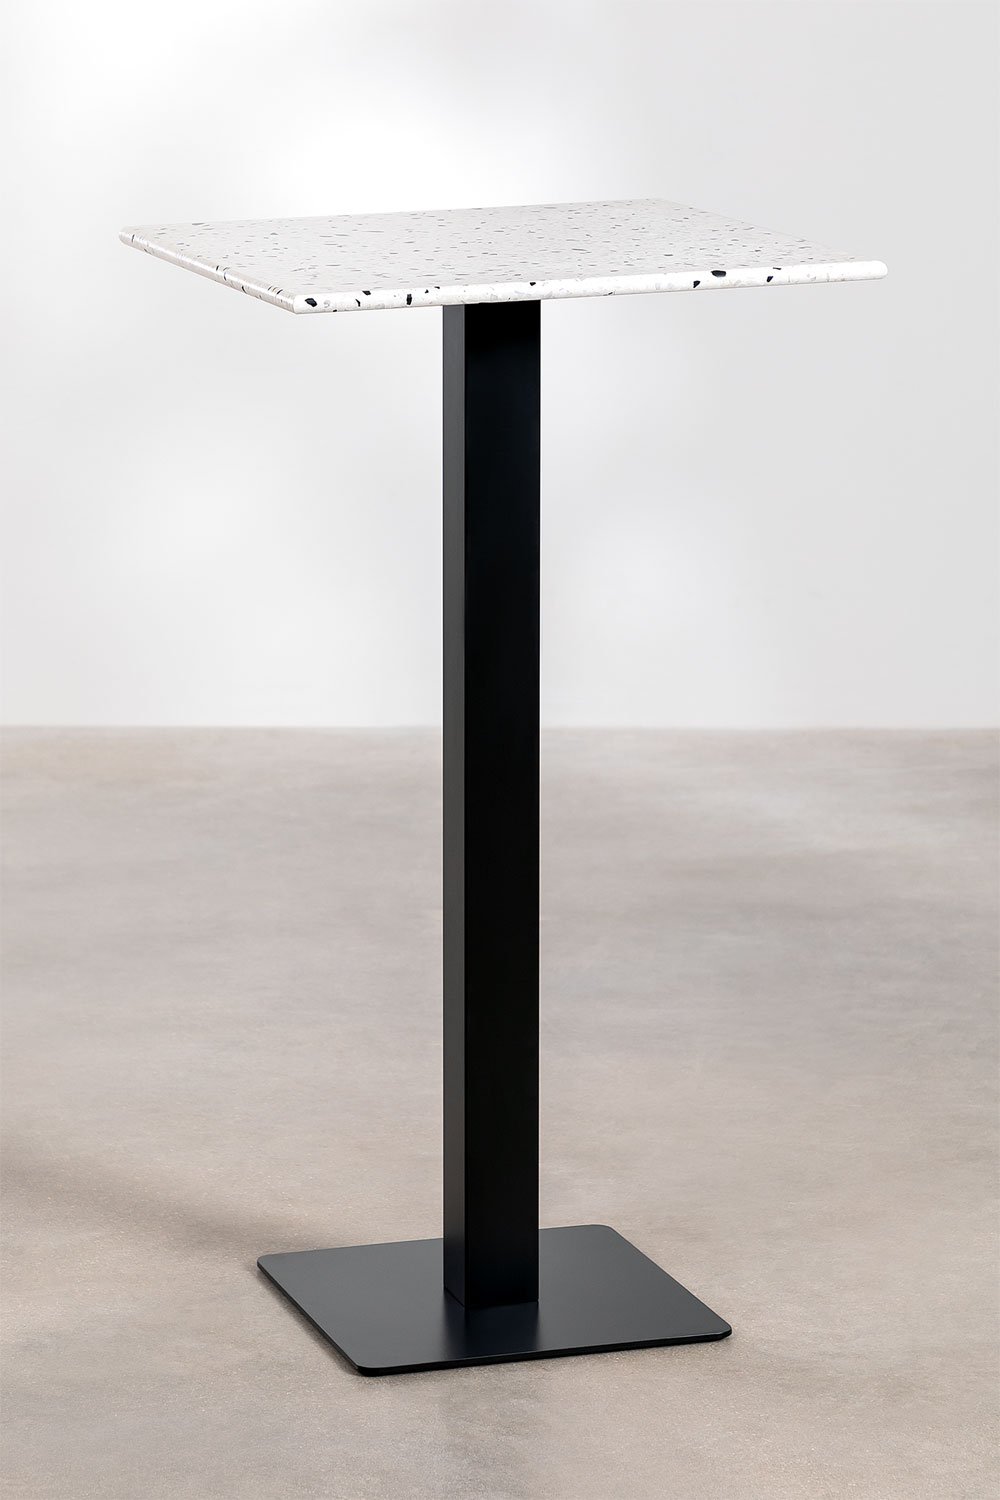 Kwadratowy wysoki stolik barowy z lastryko (60x60 cm) Praline, obrazek w galerii 1